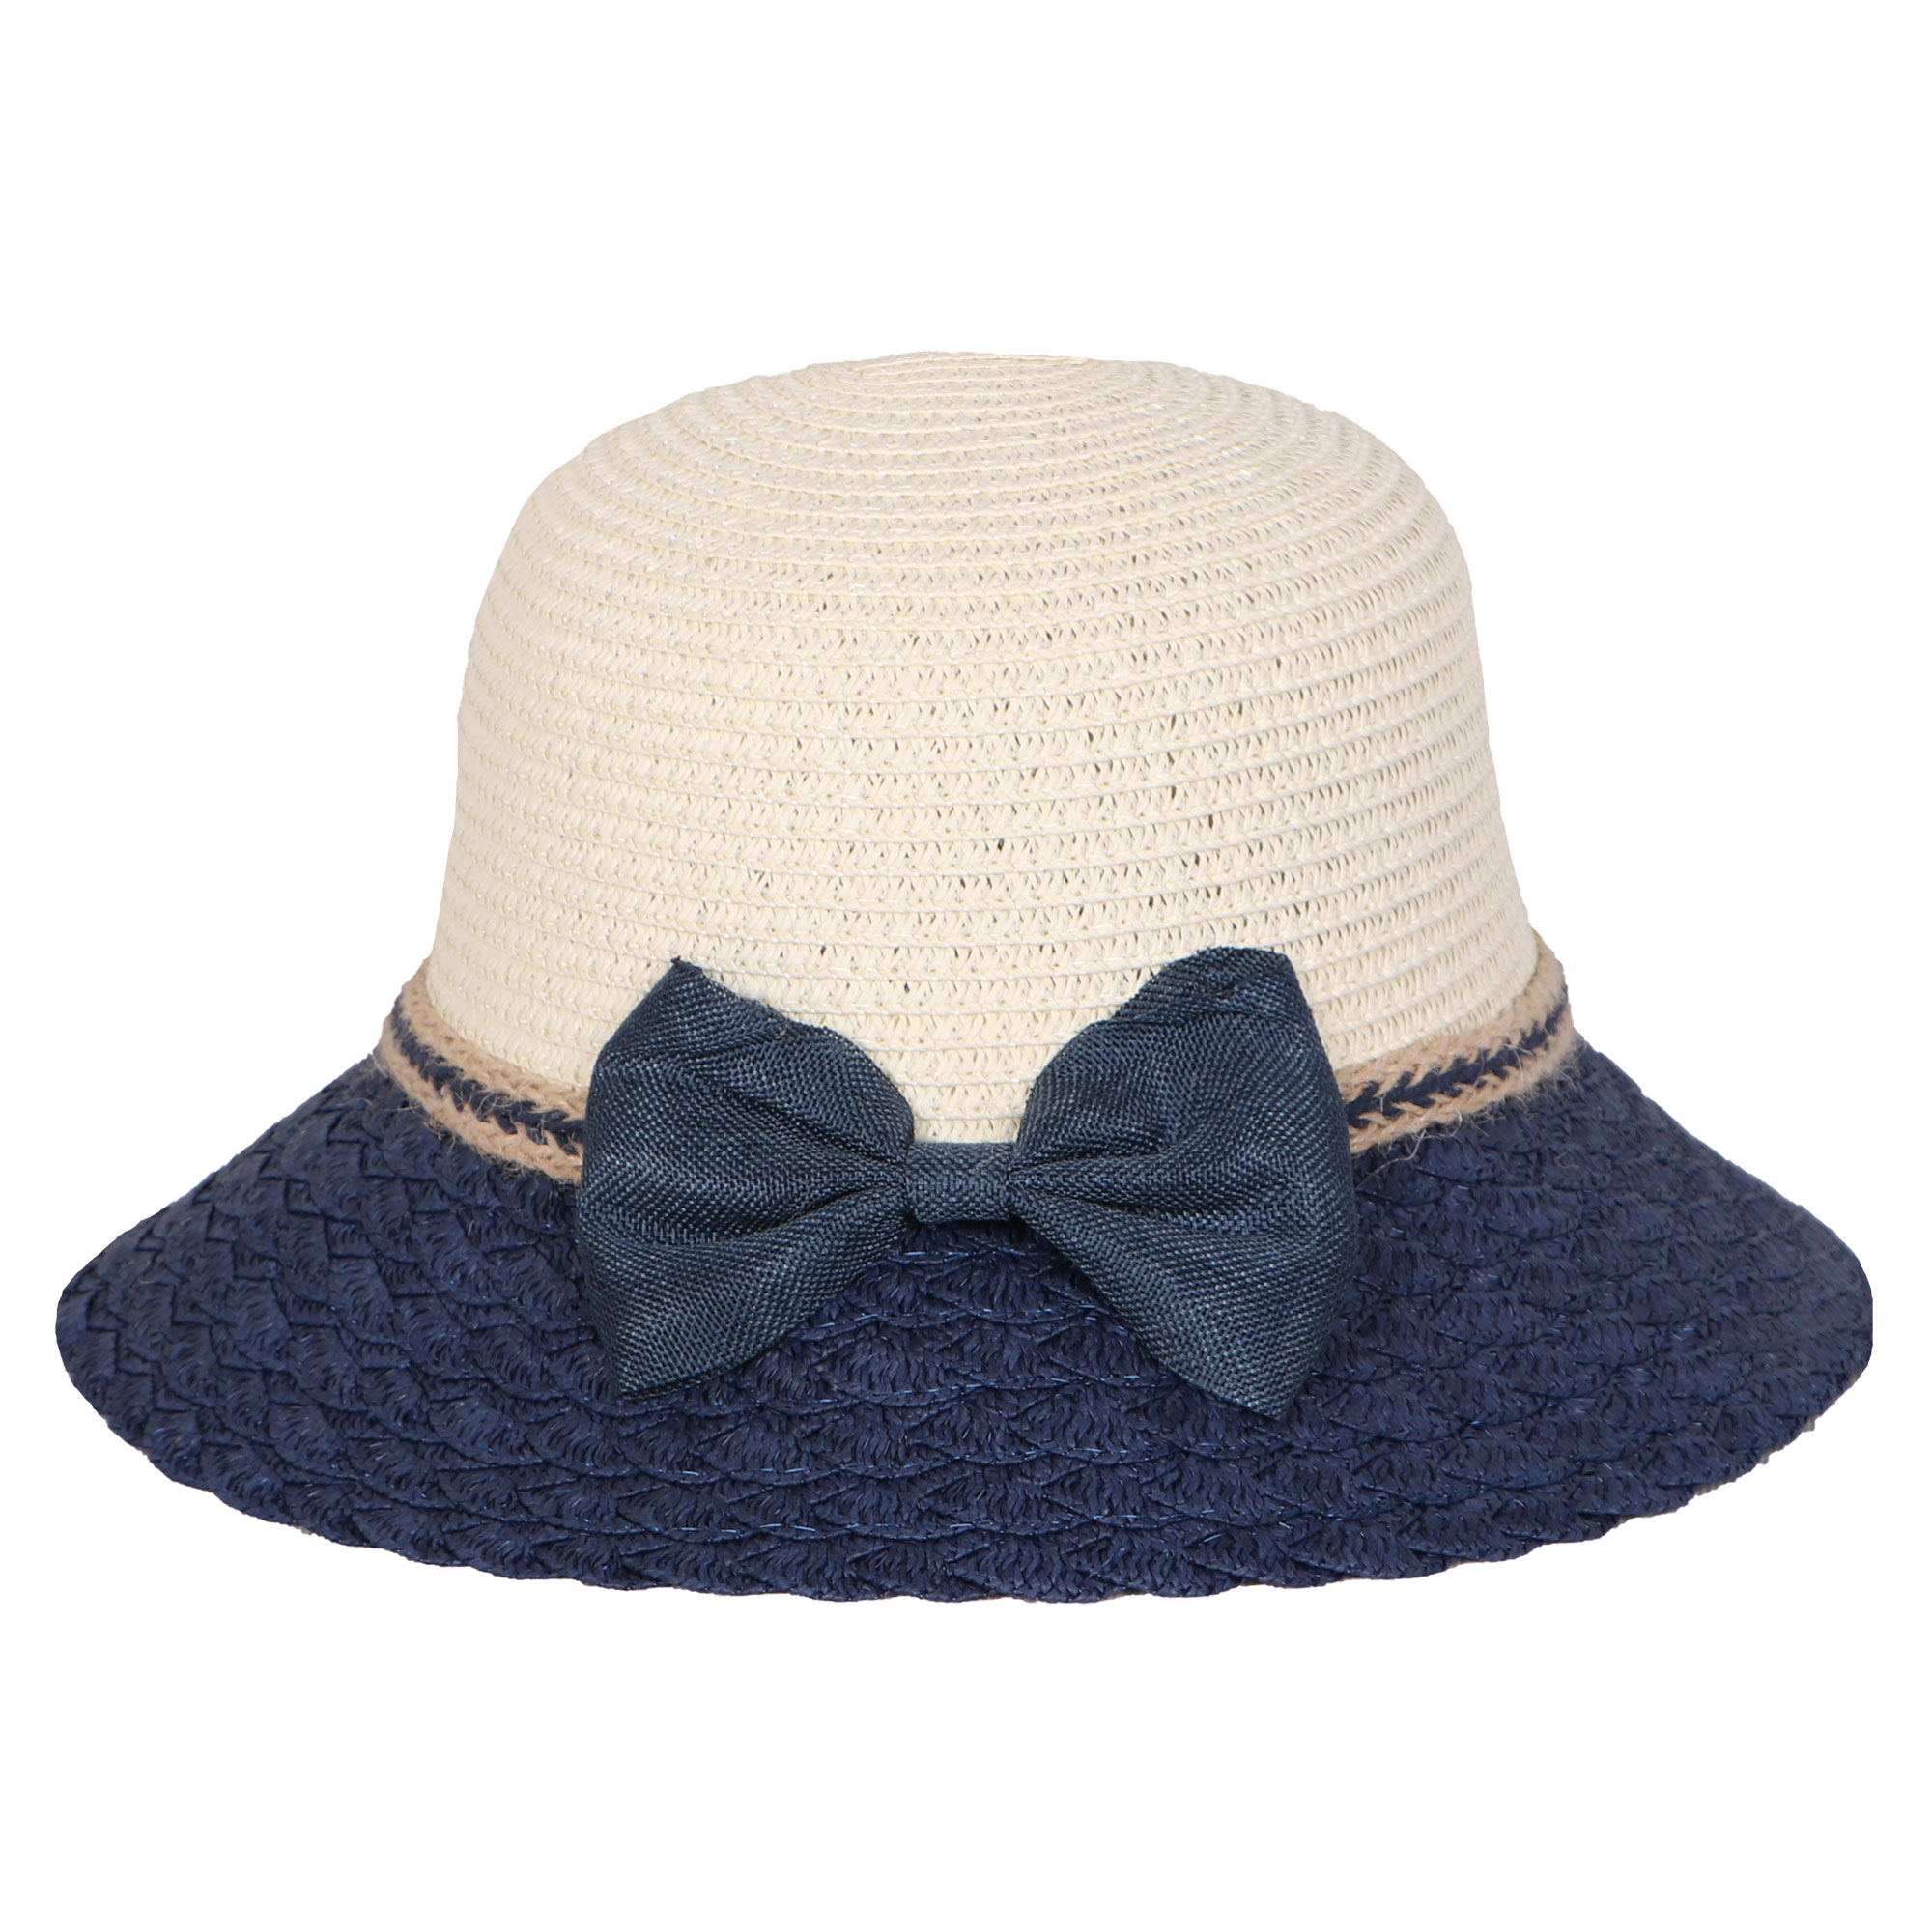 کلاه دخترانه مدل ساحلی کد 018